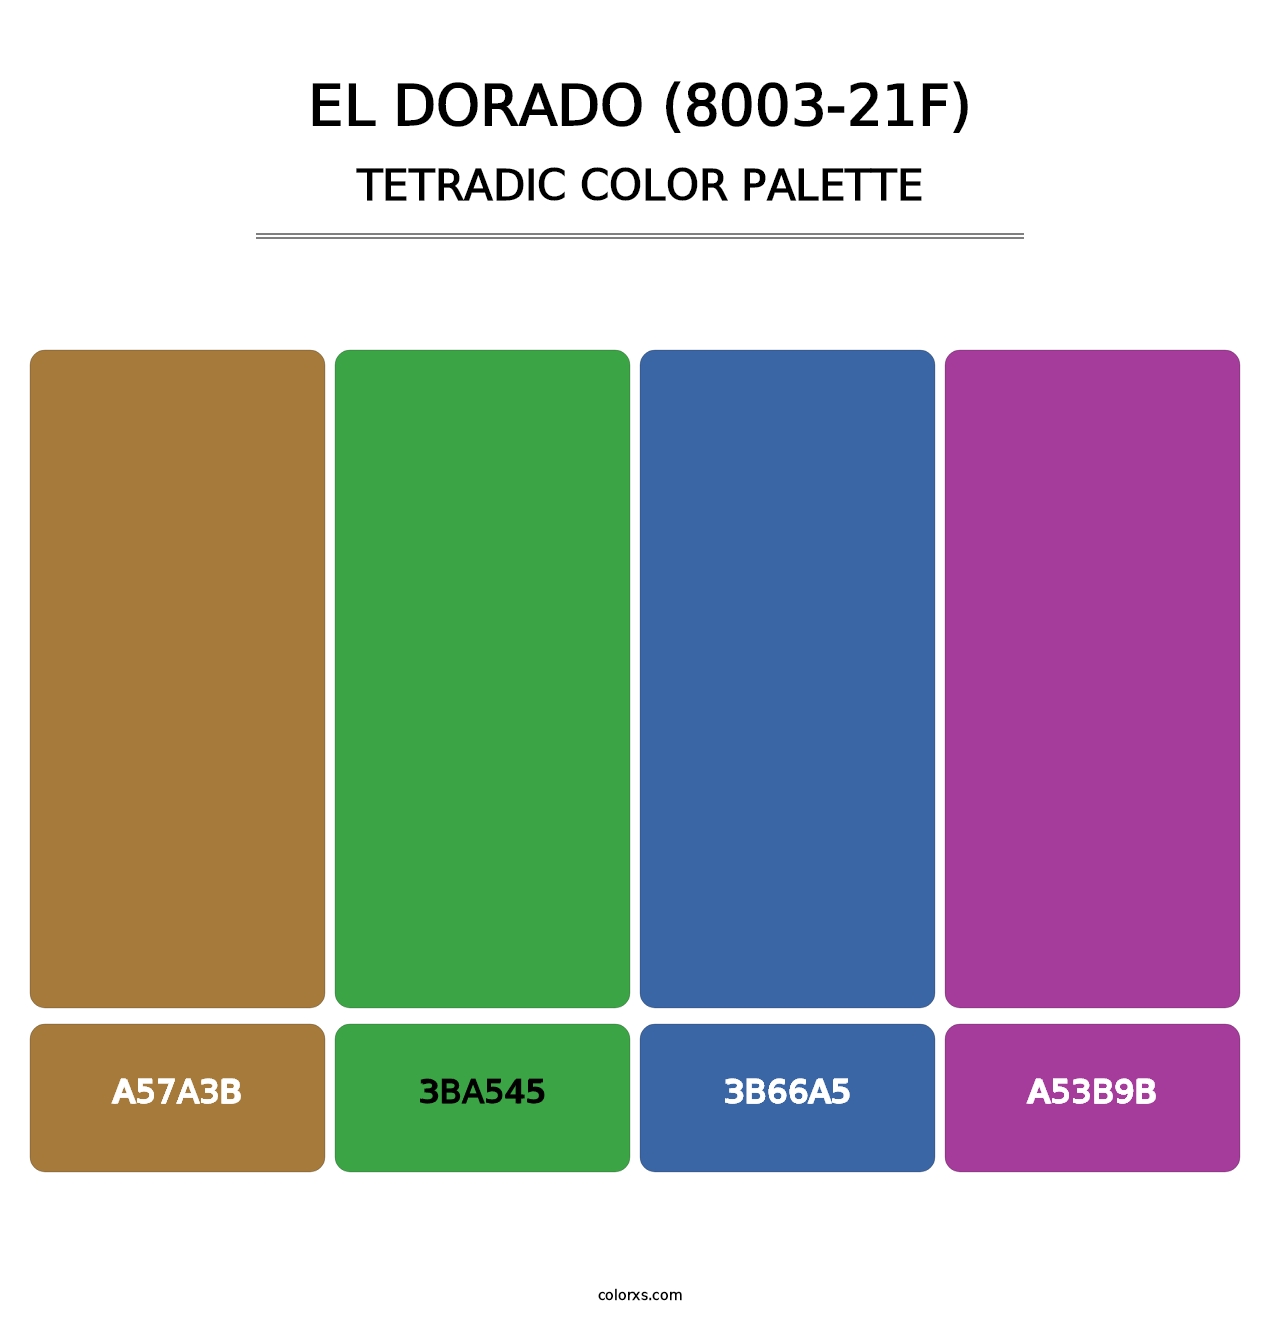 El Dorado (8003-21F) - Tetradic Color Palette